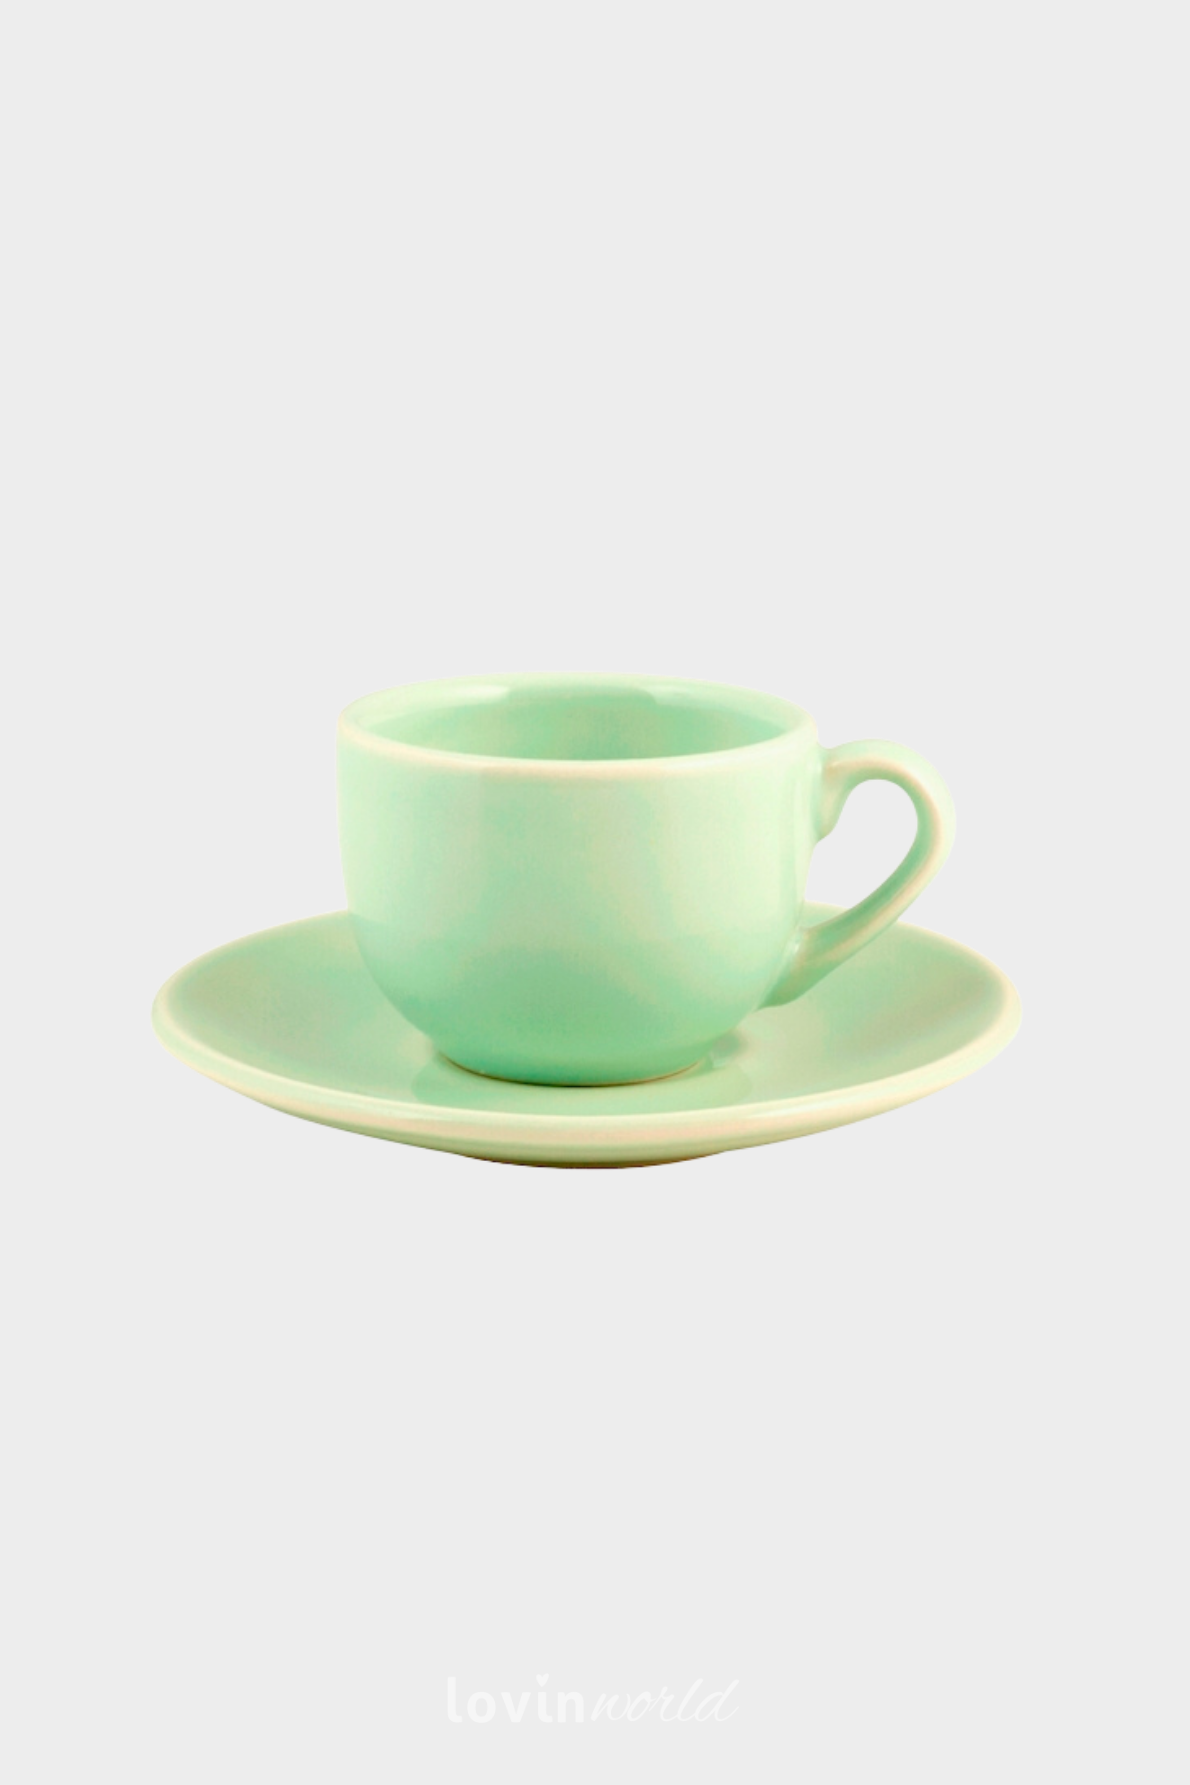 6 Tazzine caffè Madeline con piattino, in colore verde, 10 cl.-1